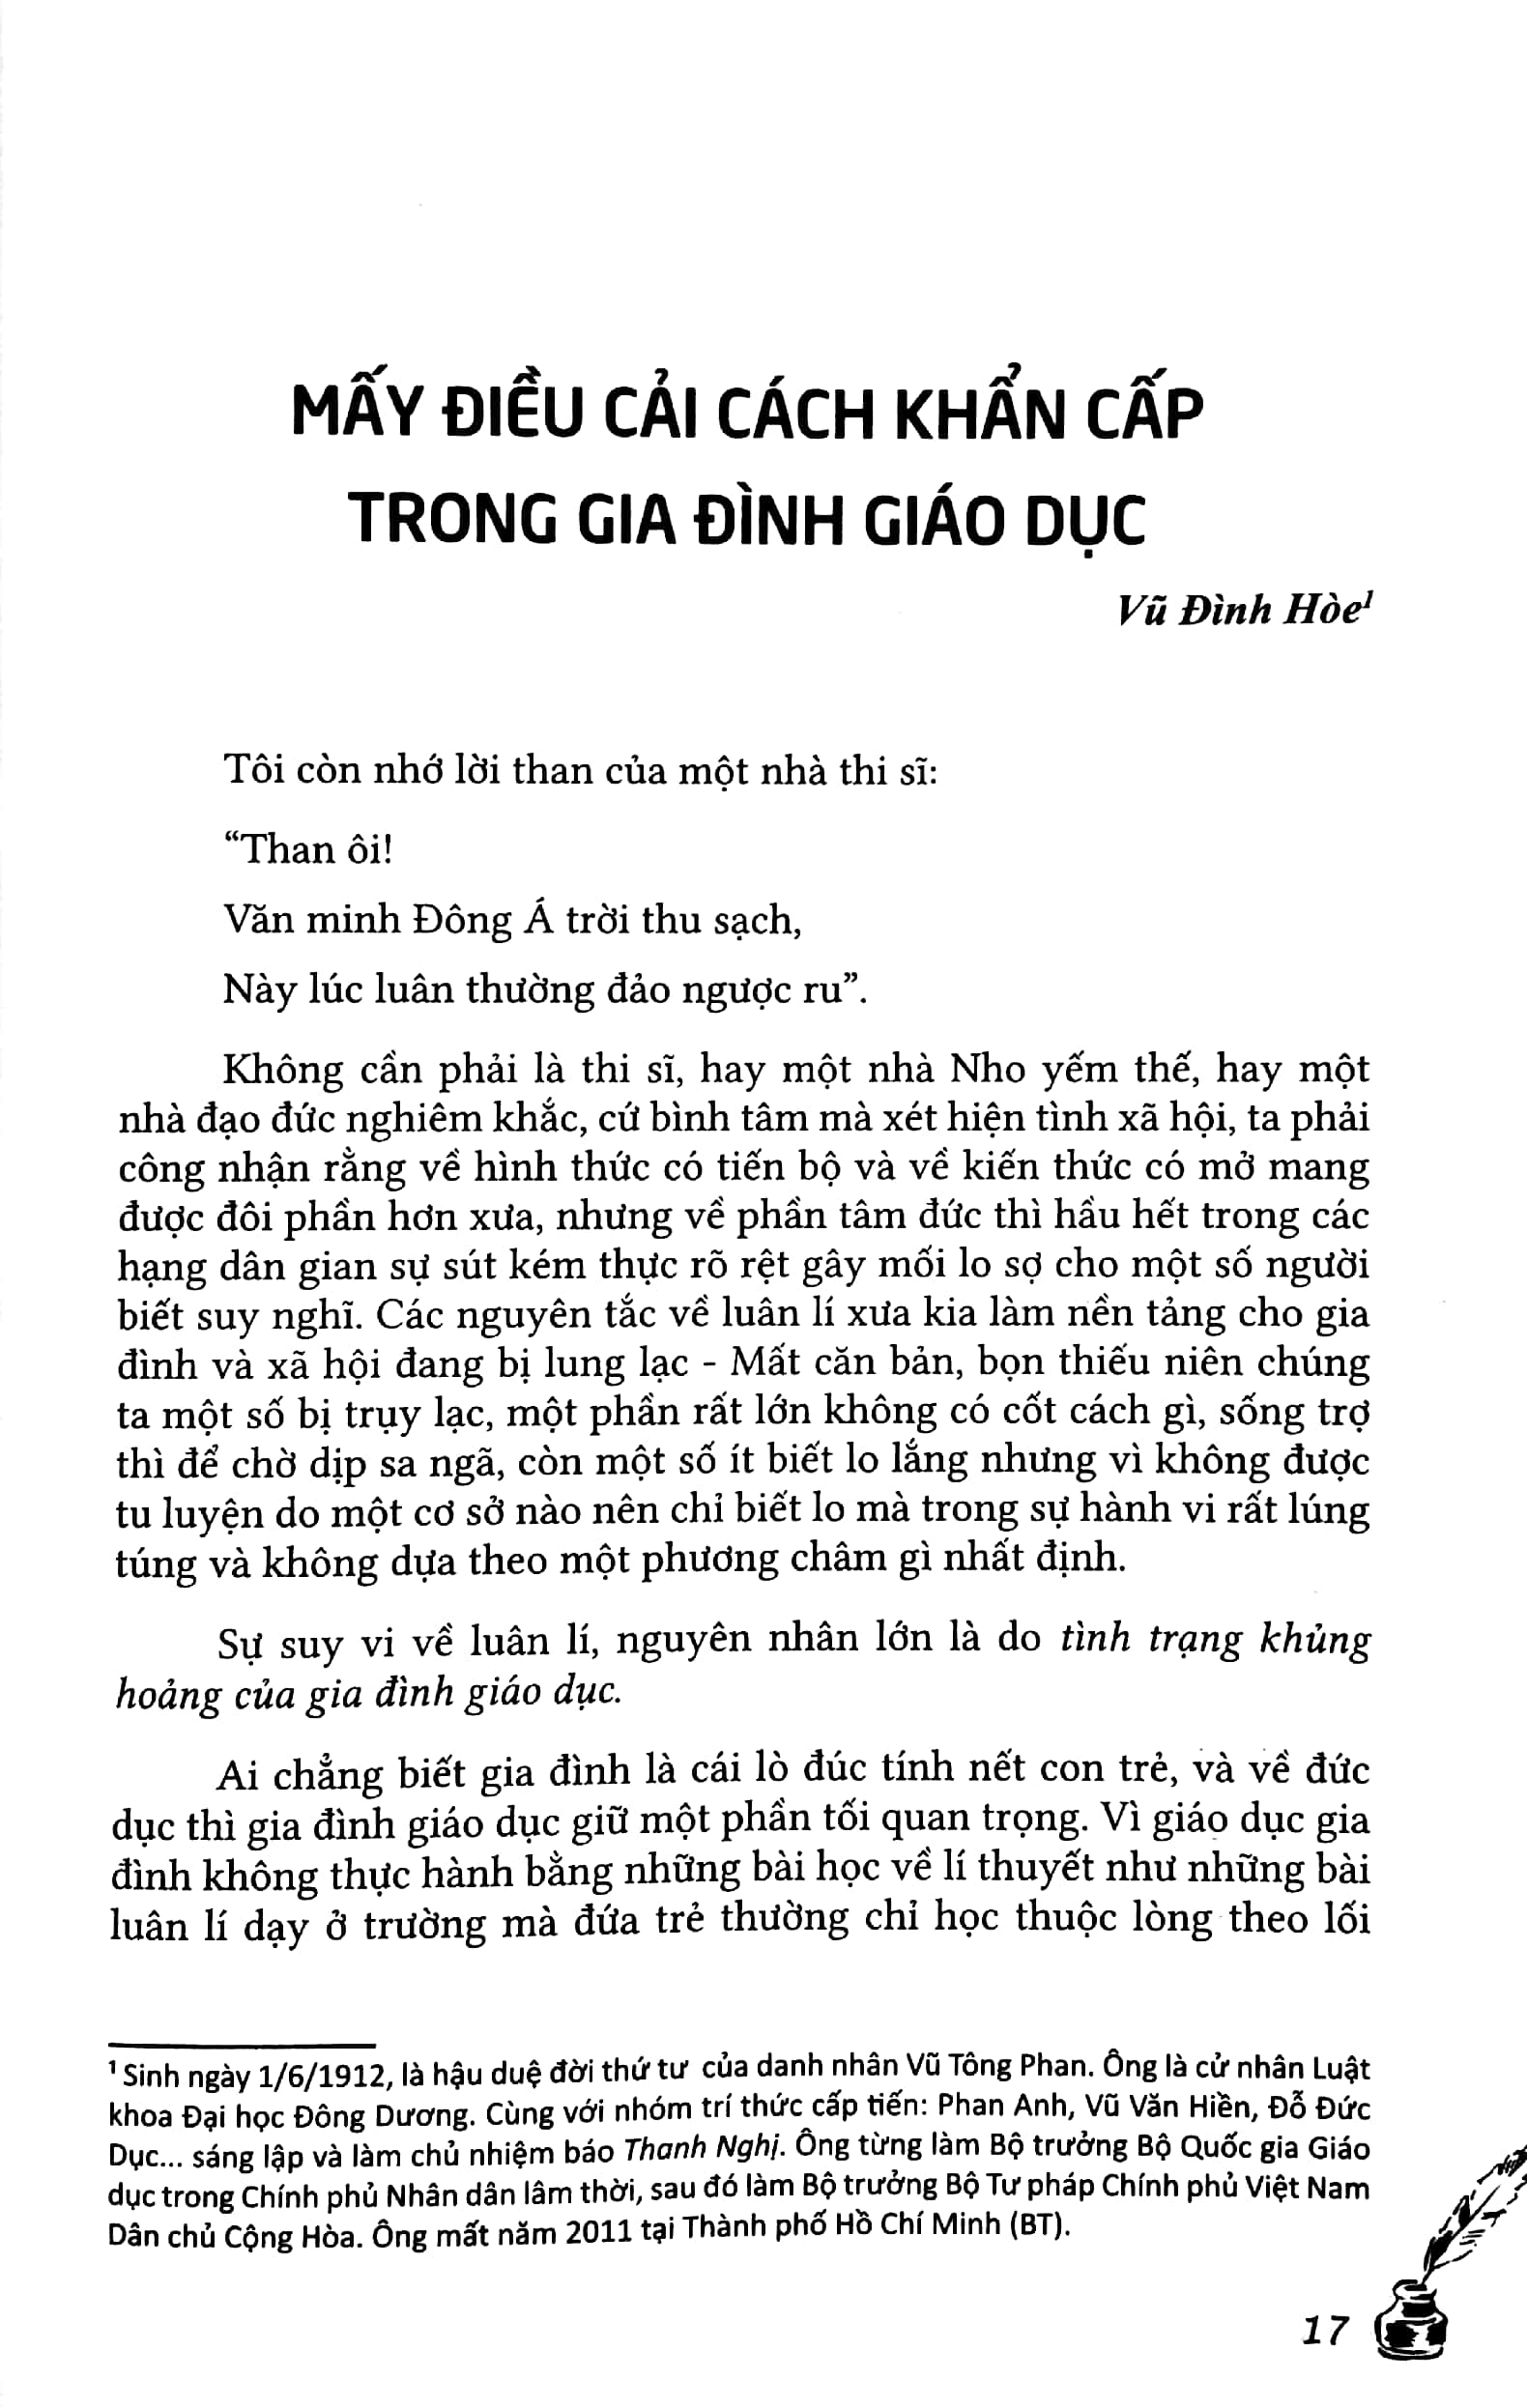 Tư Tưởng Giáo Dục Việt Nam - Trên Báo Thanh Nghị 1941 - 1945 PDF